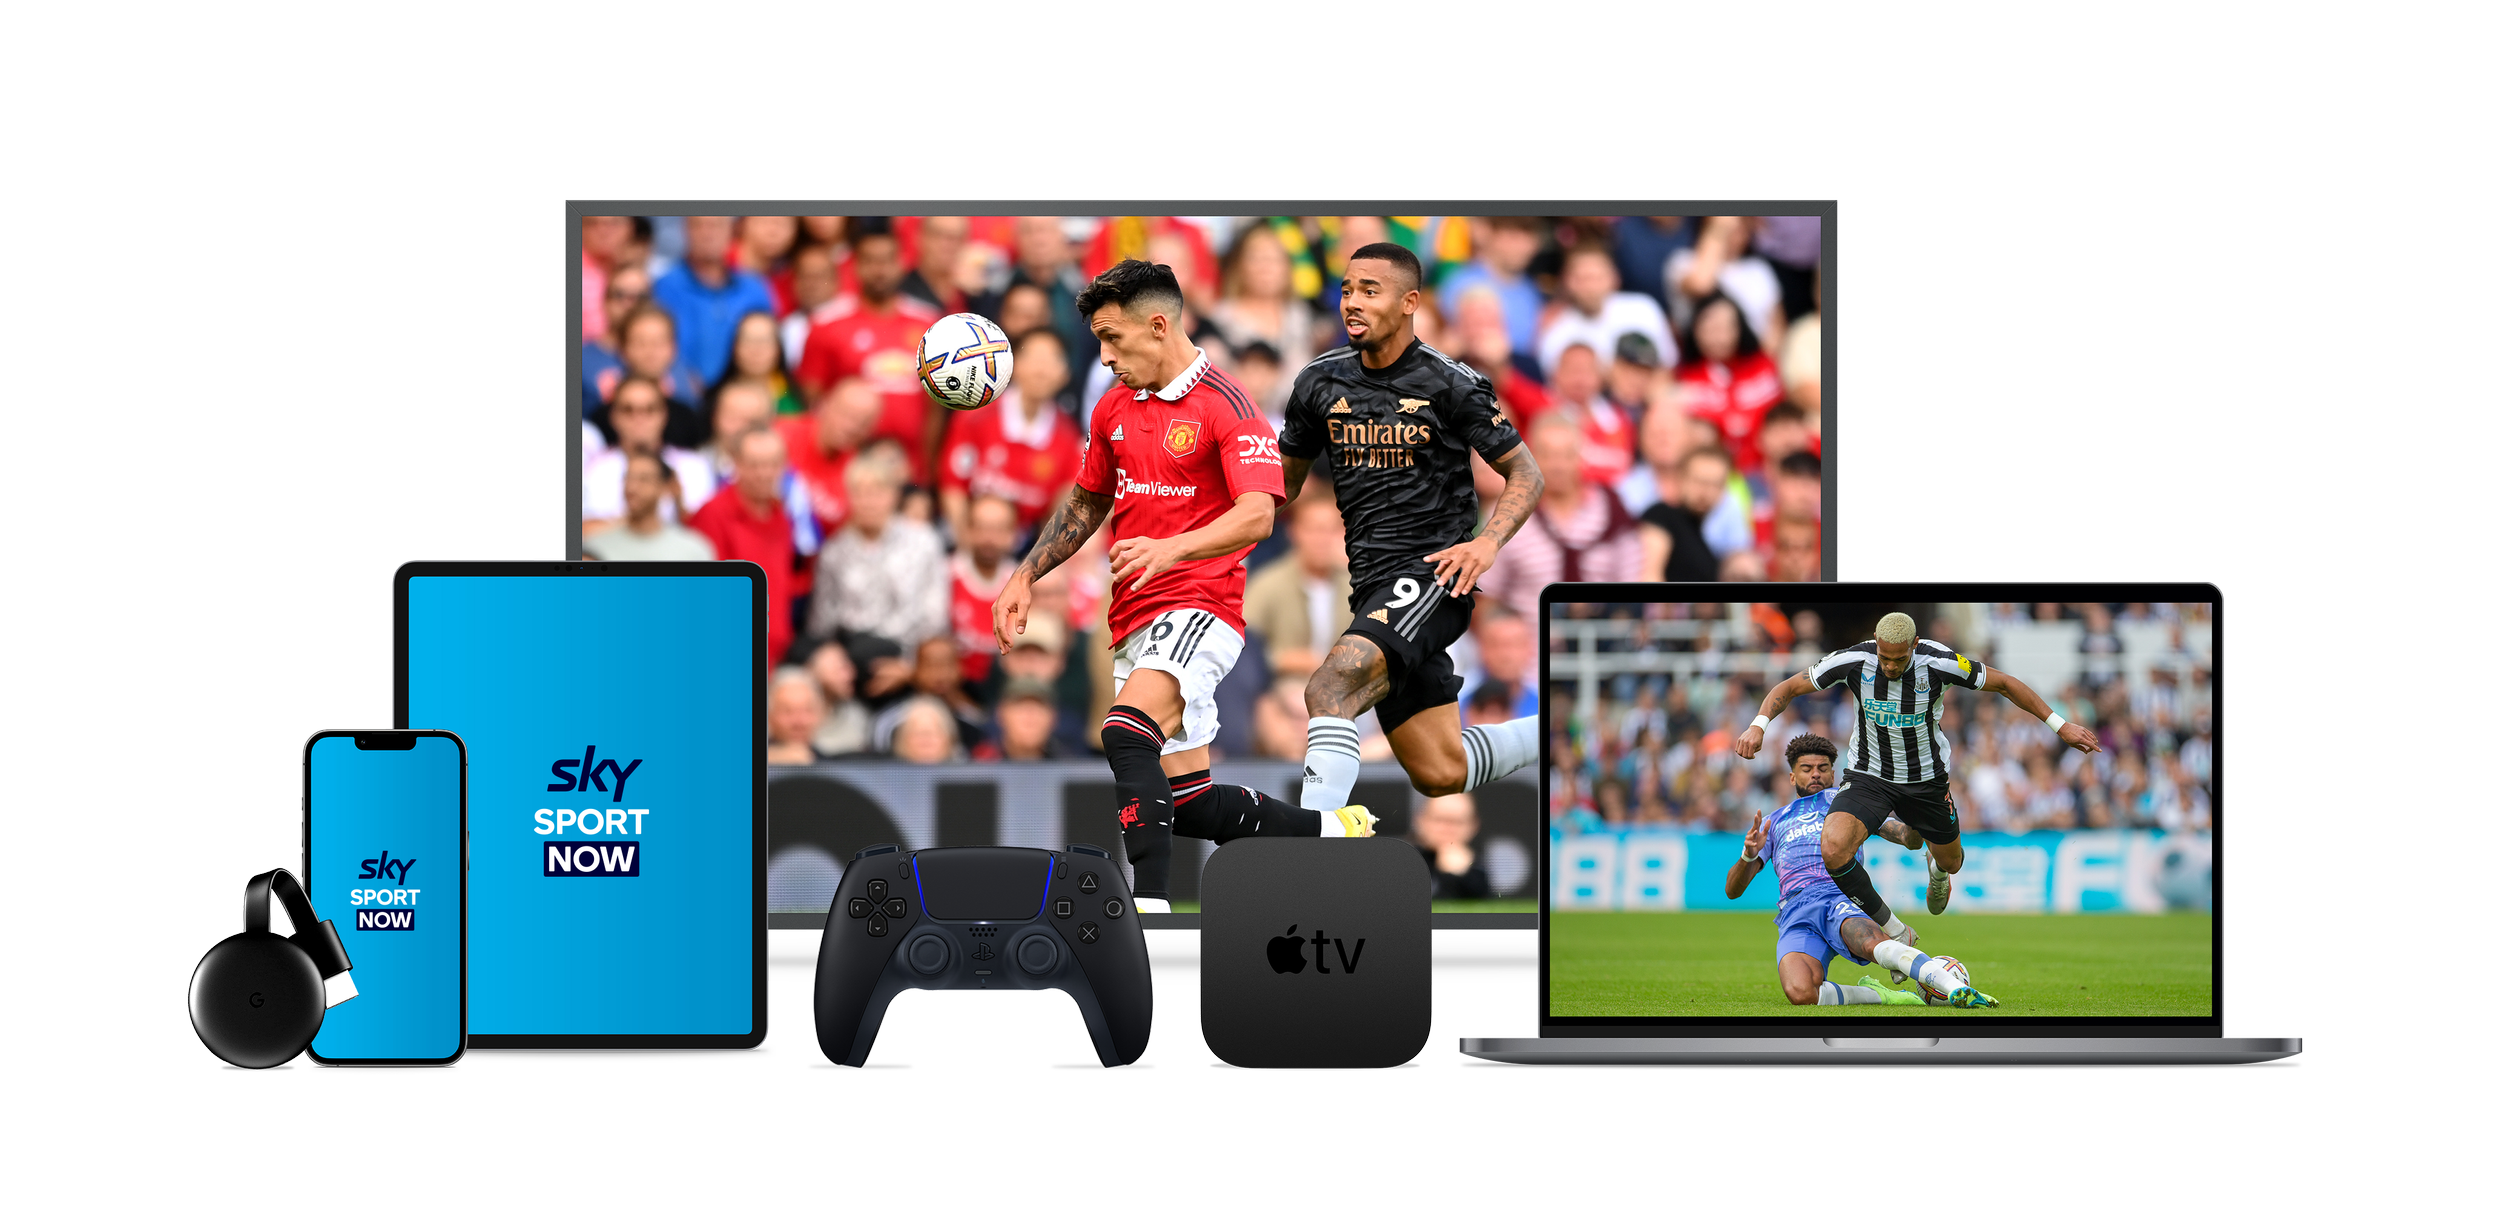 Premier League — Sky Sport Now